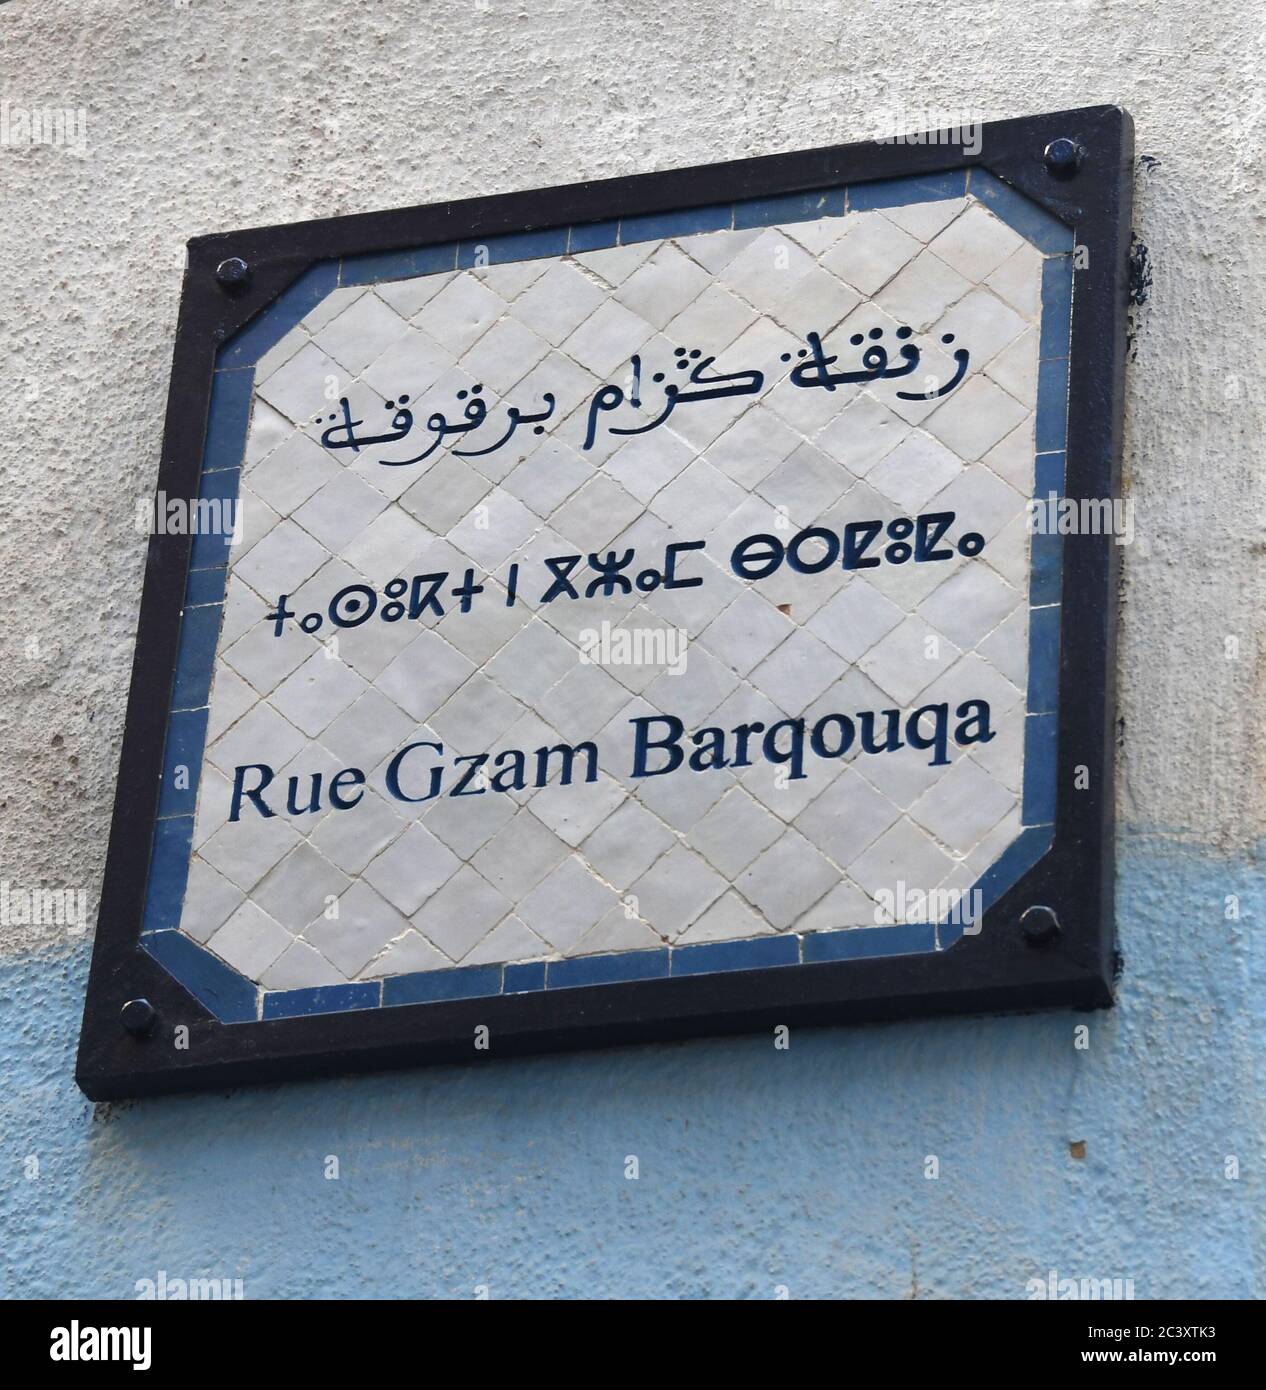 FES, Maroc. 27 février 2020. Un panneau de rue est en arabe marocain, berbère, et français dans le souk ou le marché à Fès, Maroc. 27 février 2020. Crédit : Mark Hertzberg/ZUMA Wire/Alay Live News Banque D'Images